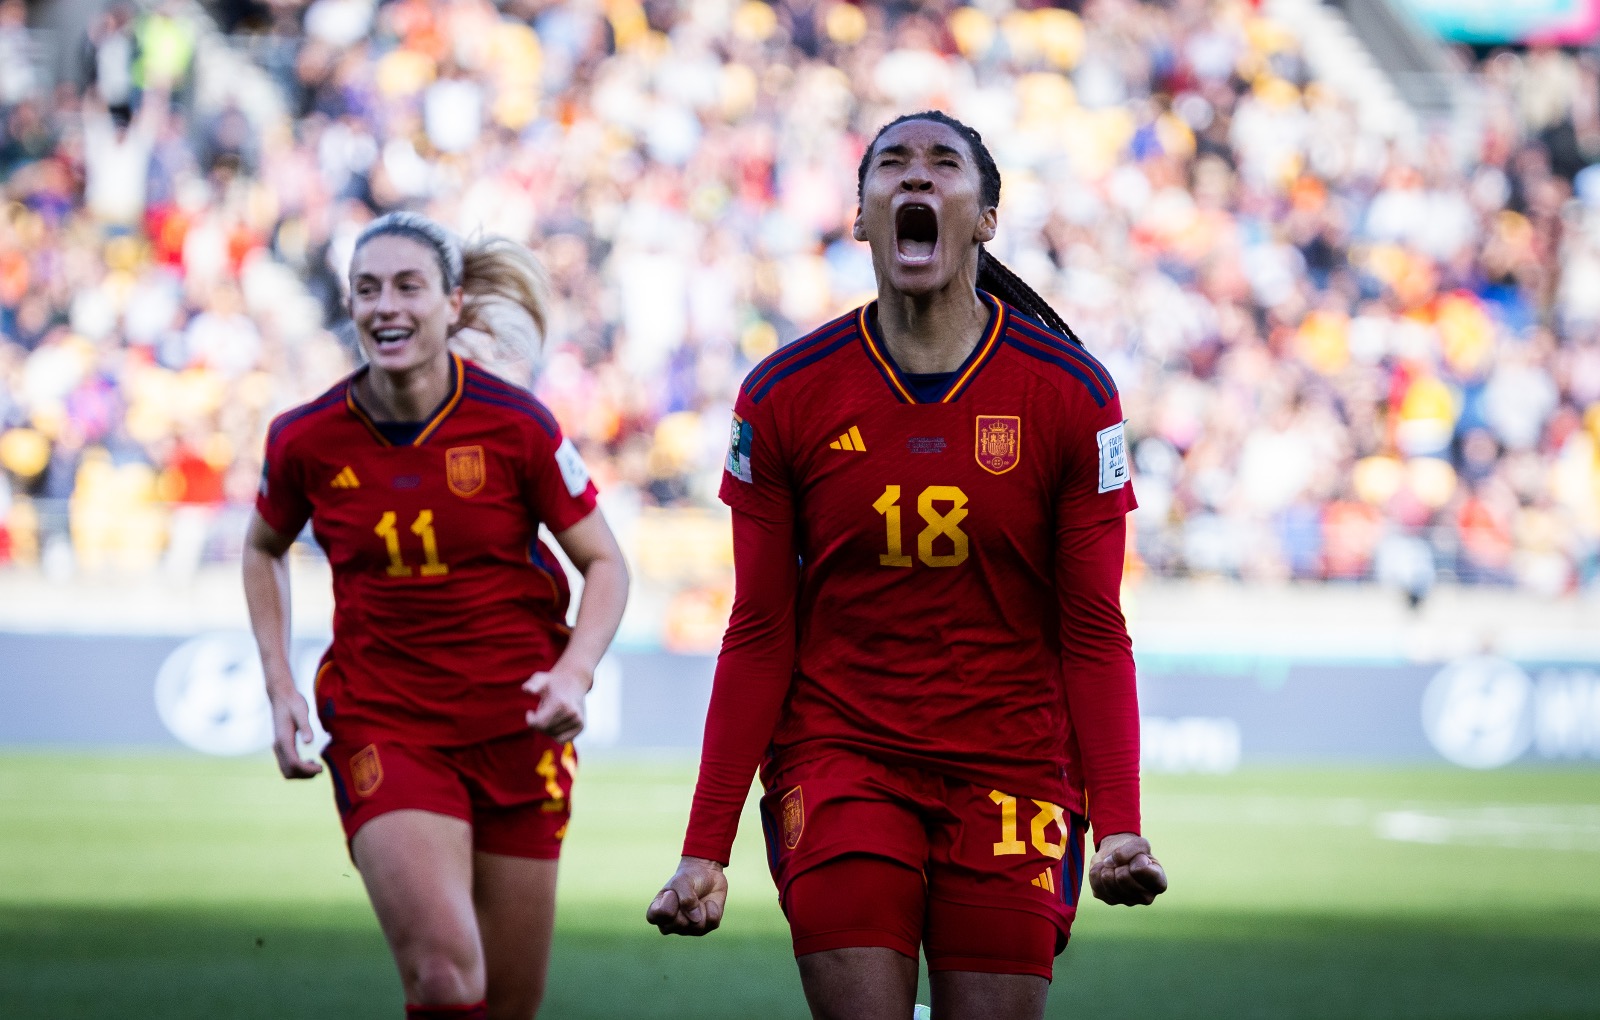 Palpite Espanha x Holanda: 10/08/2023 - Copa do Mundo Feminina